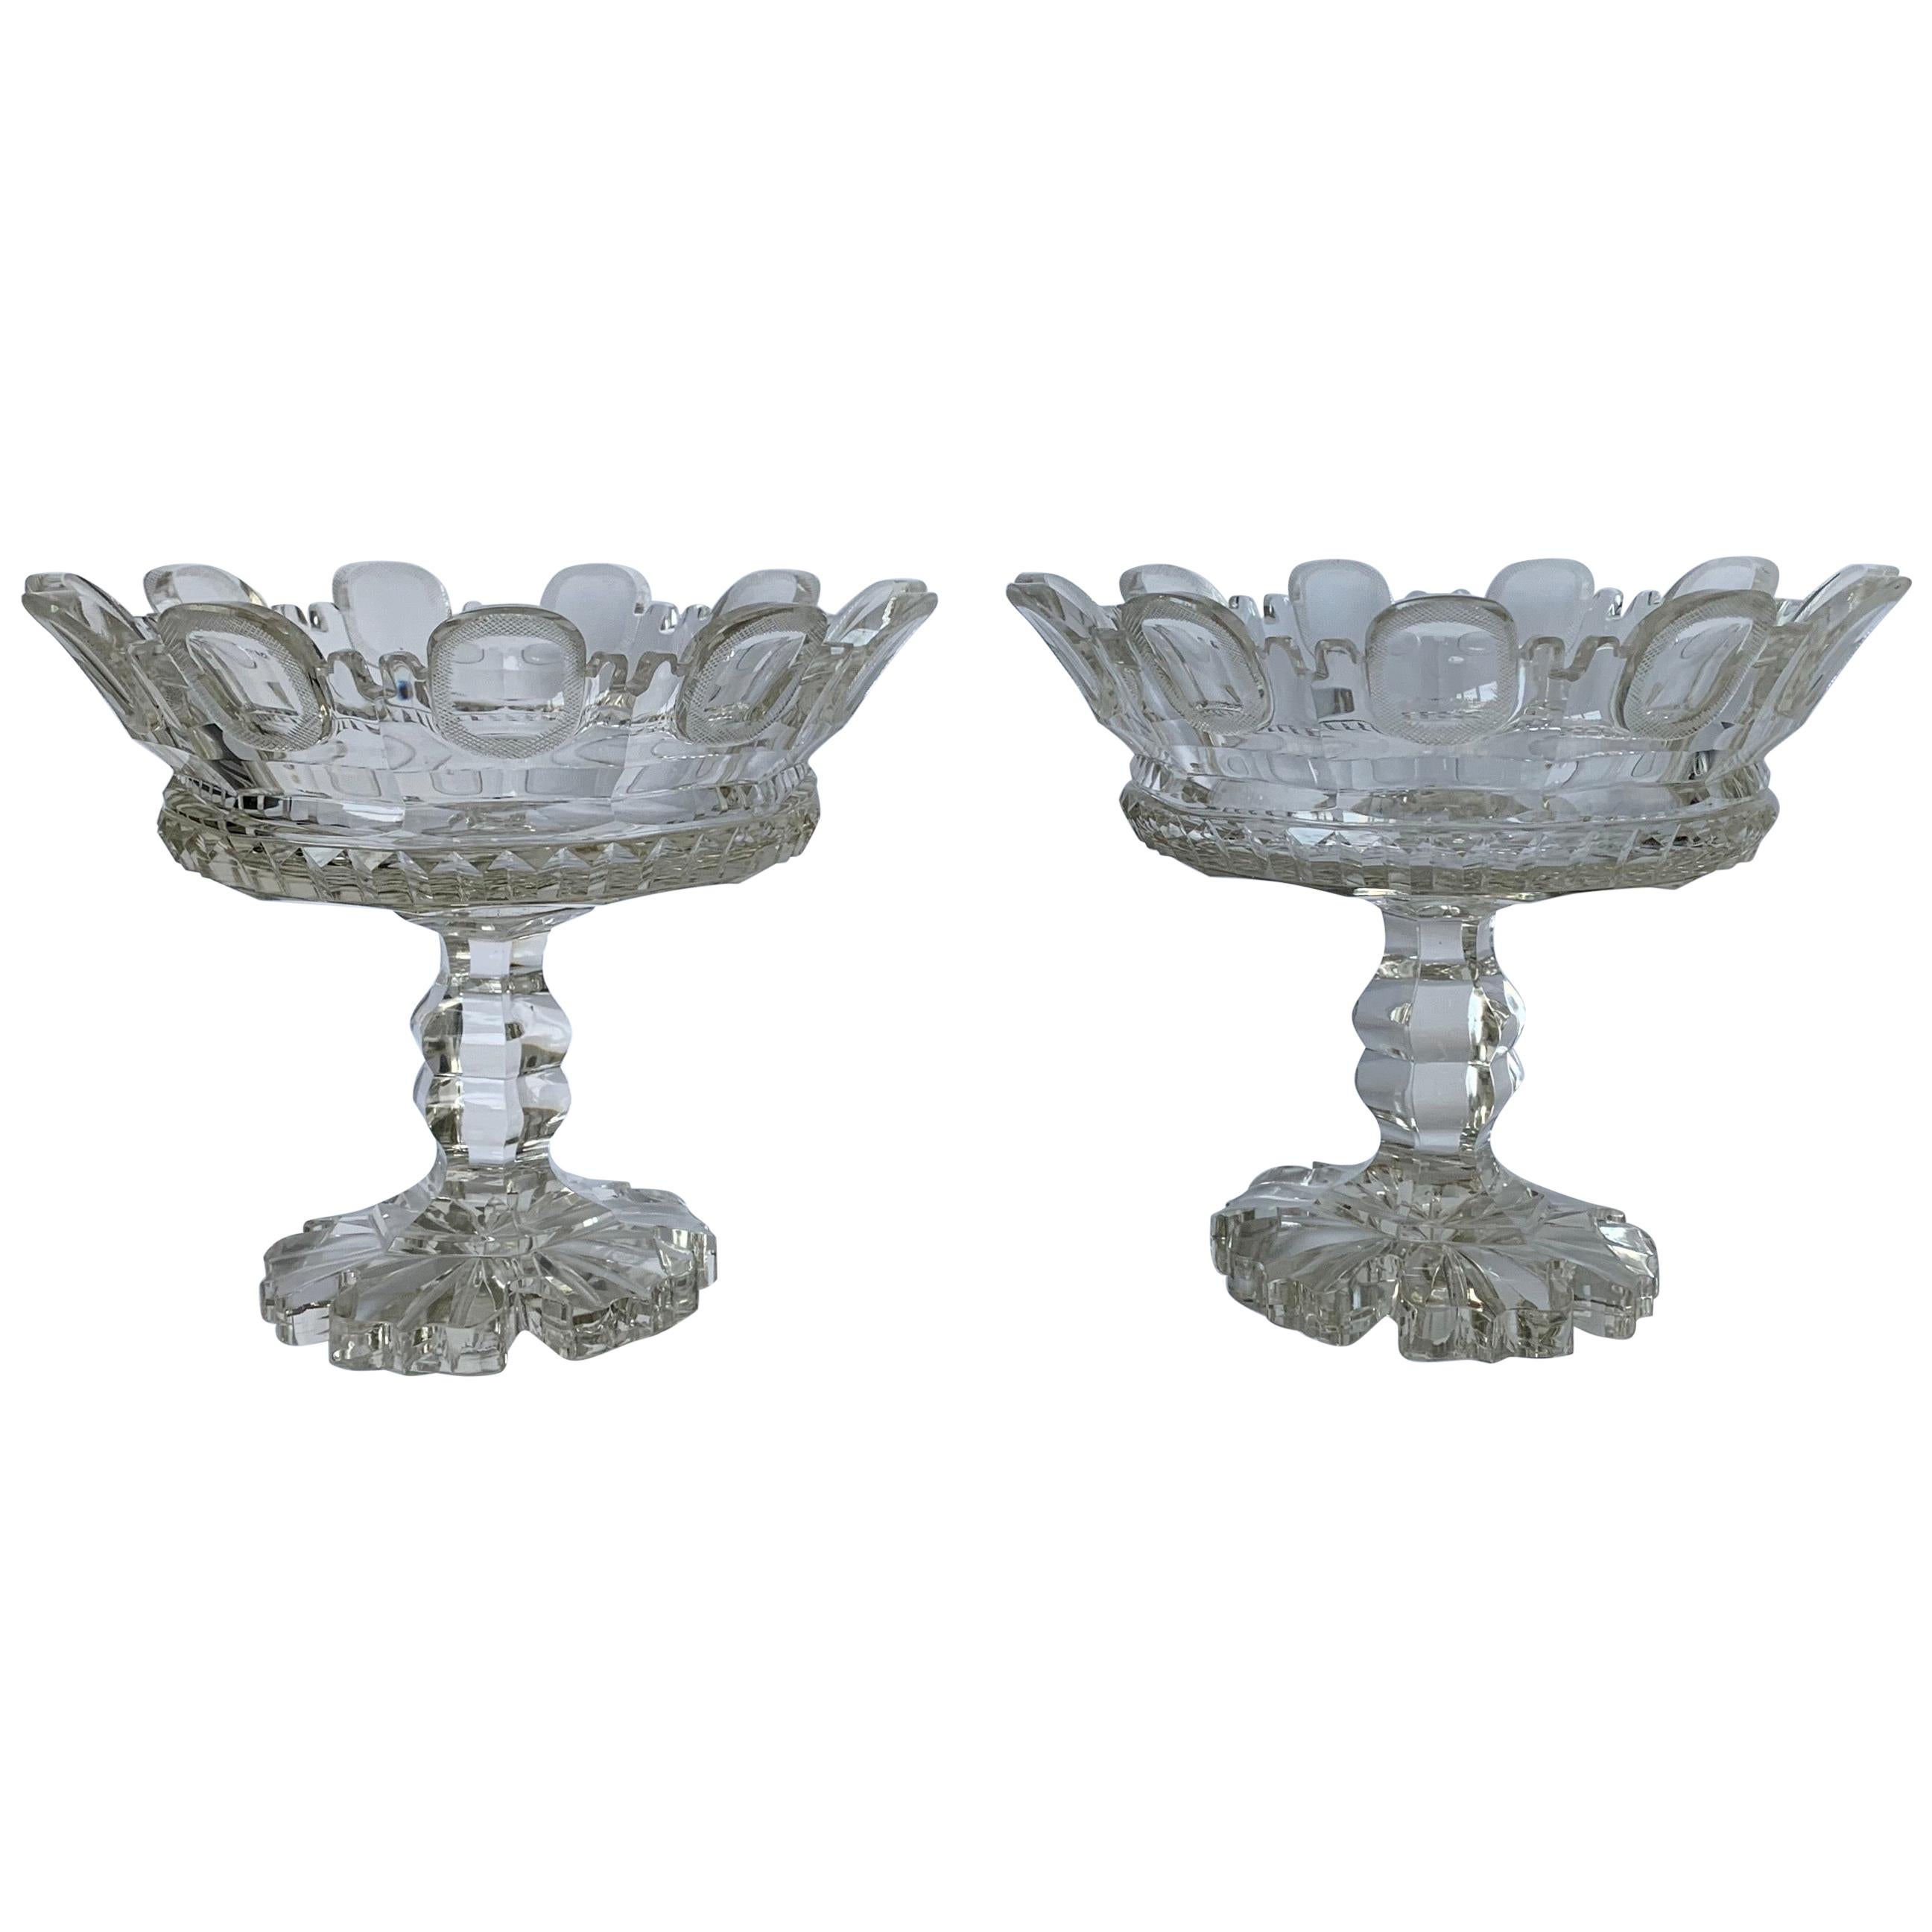 Pair of 1820s Cut Crystal Mantle Vases